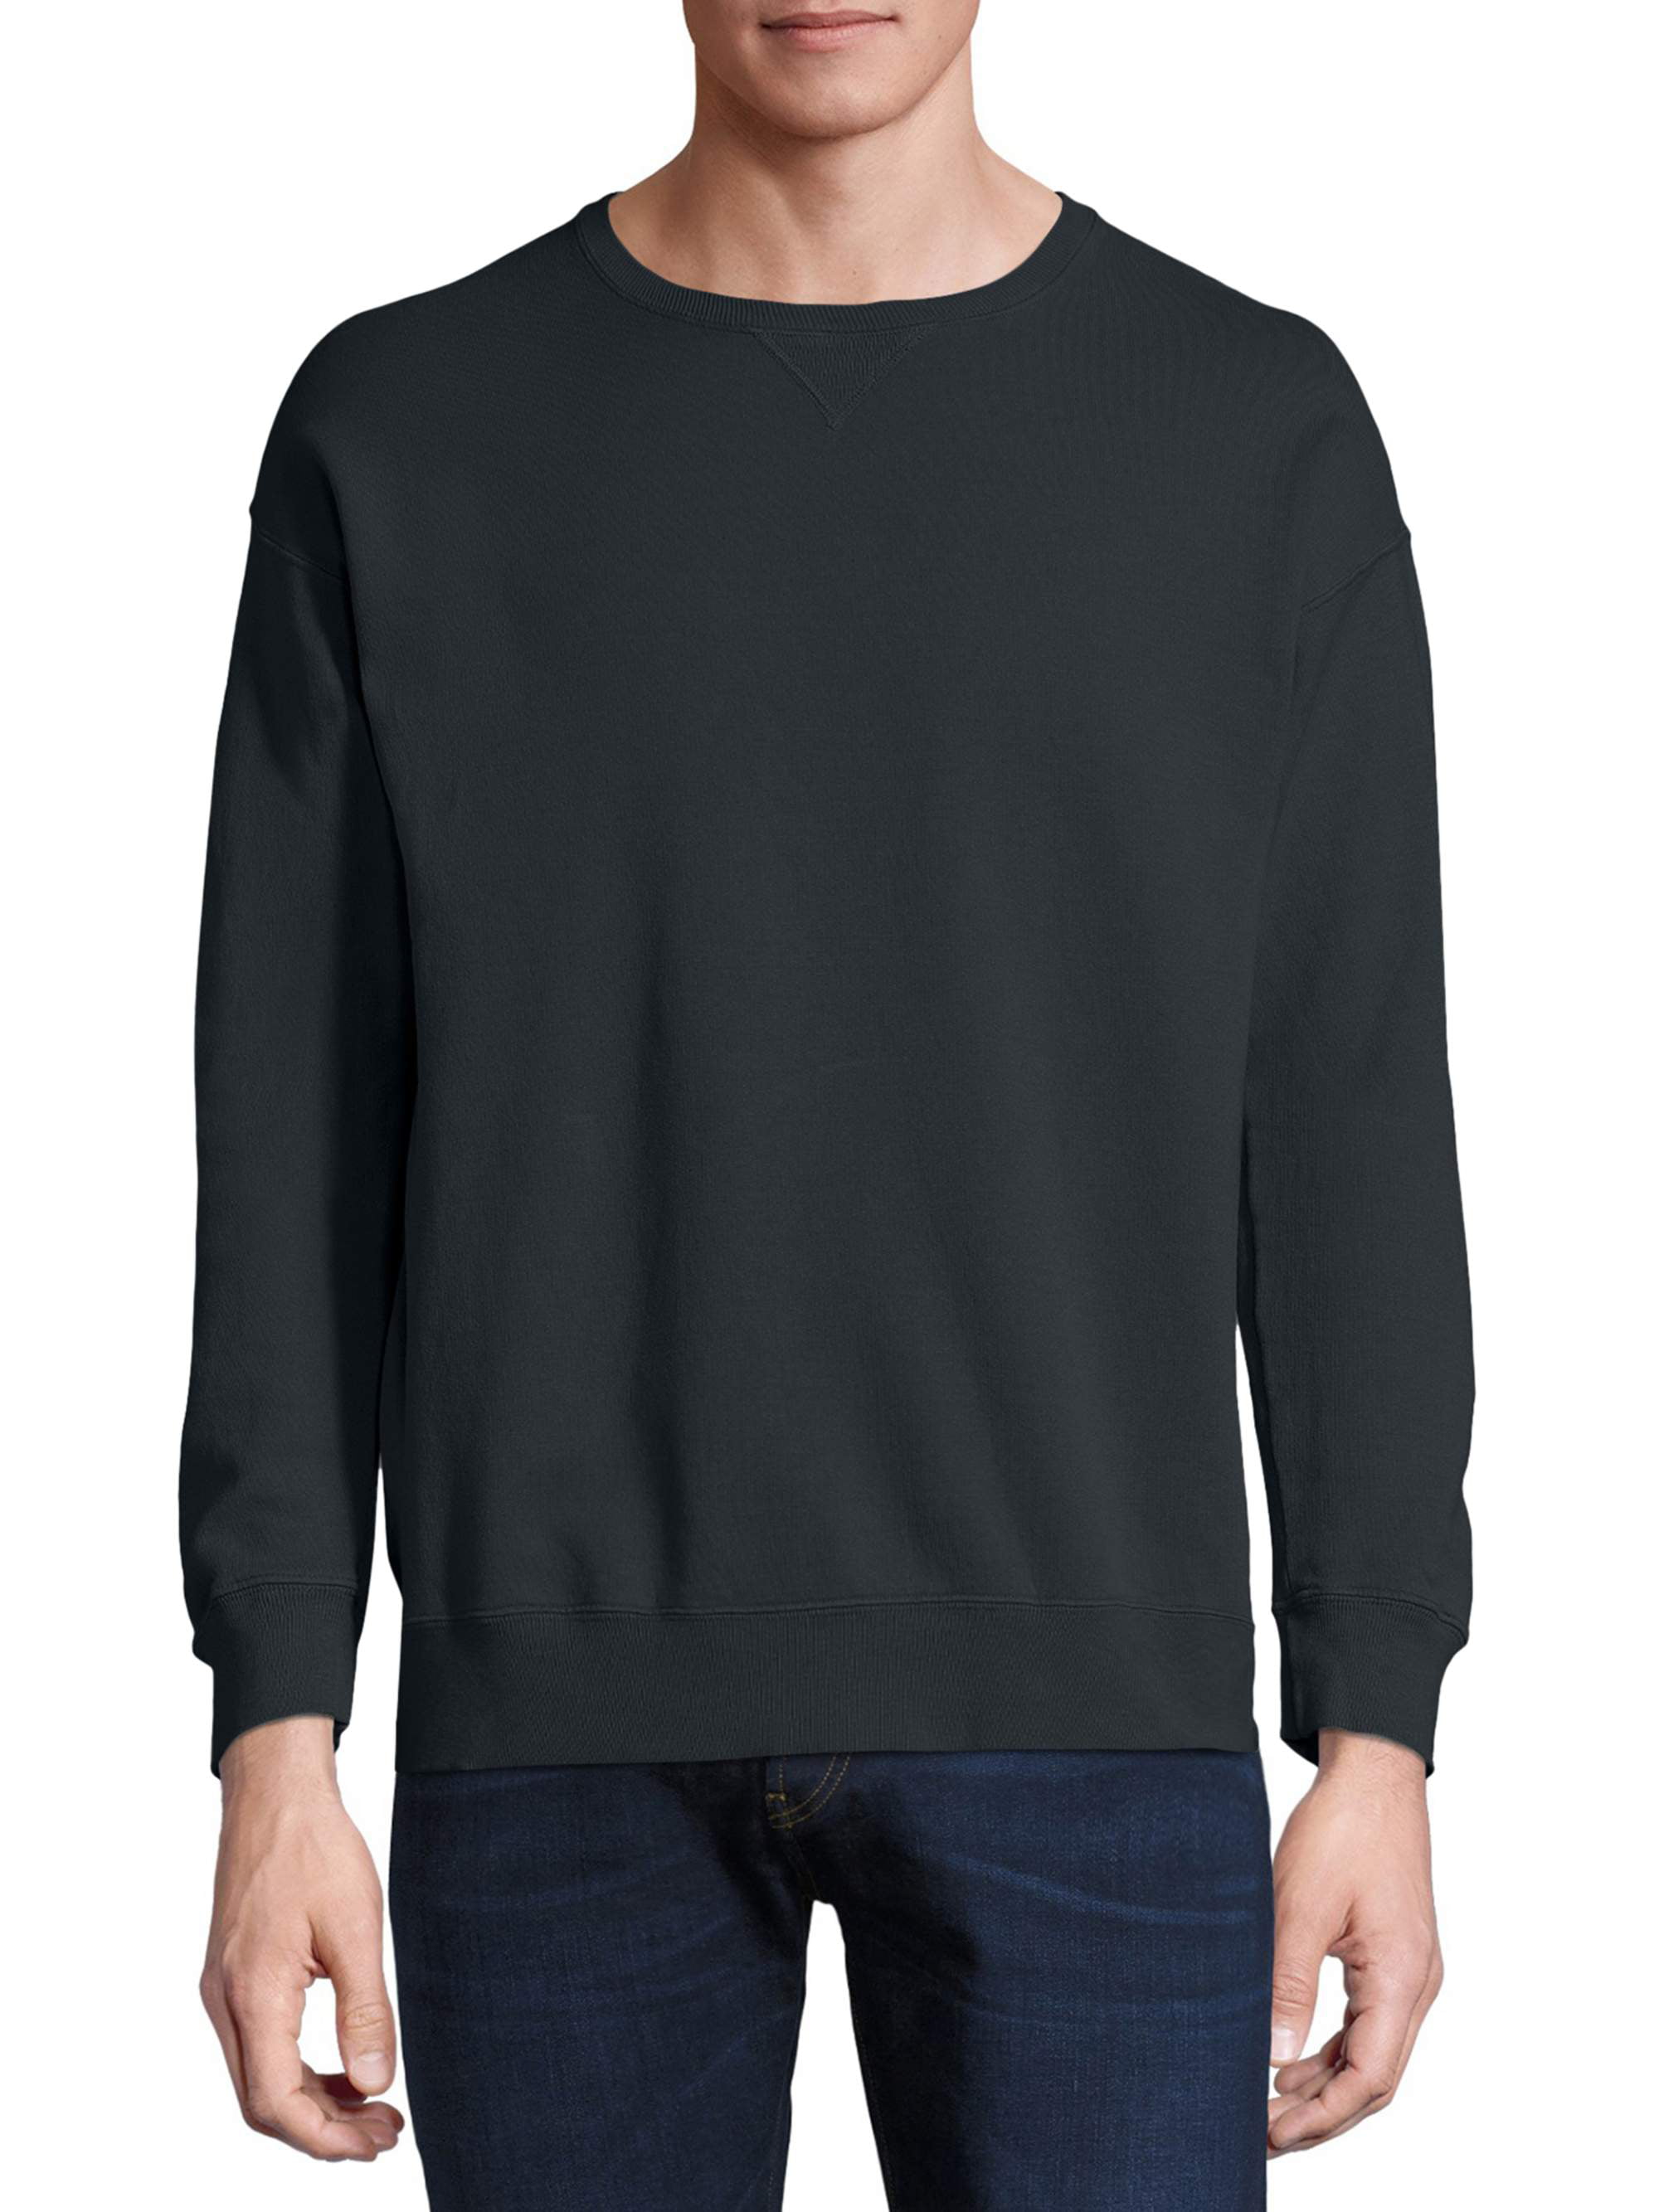 Hanes Men's ComfortWash Garment Dyed Fleece Sweatshirt - Walmart.com